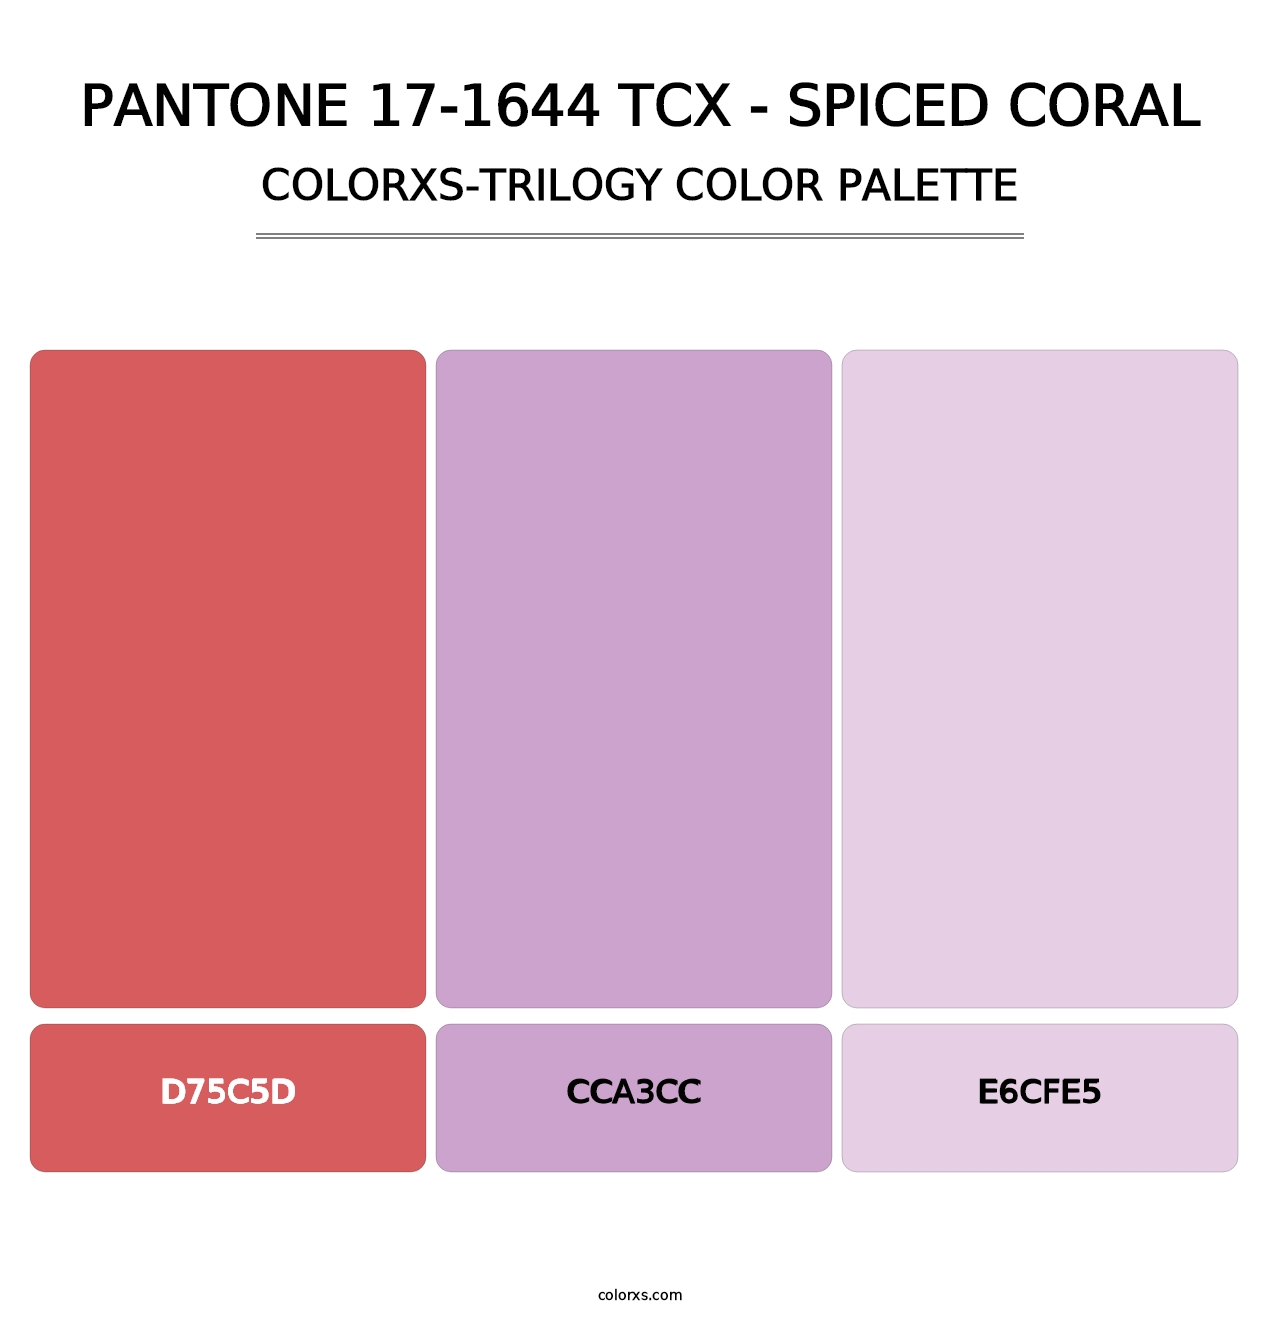 PANTONE 17-1644 TCX - Spiced Coral - Colorxs Trilogy Palette